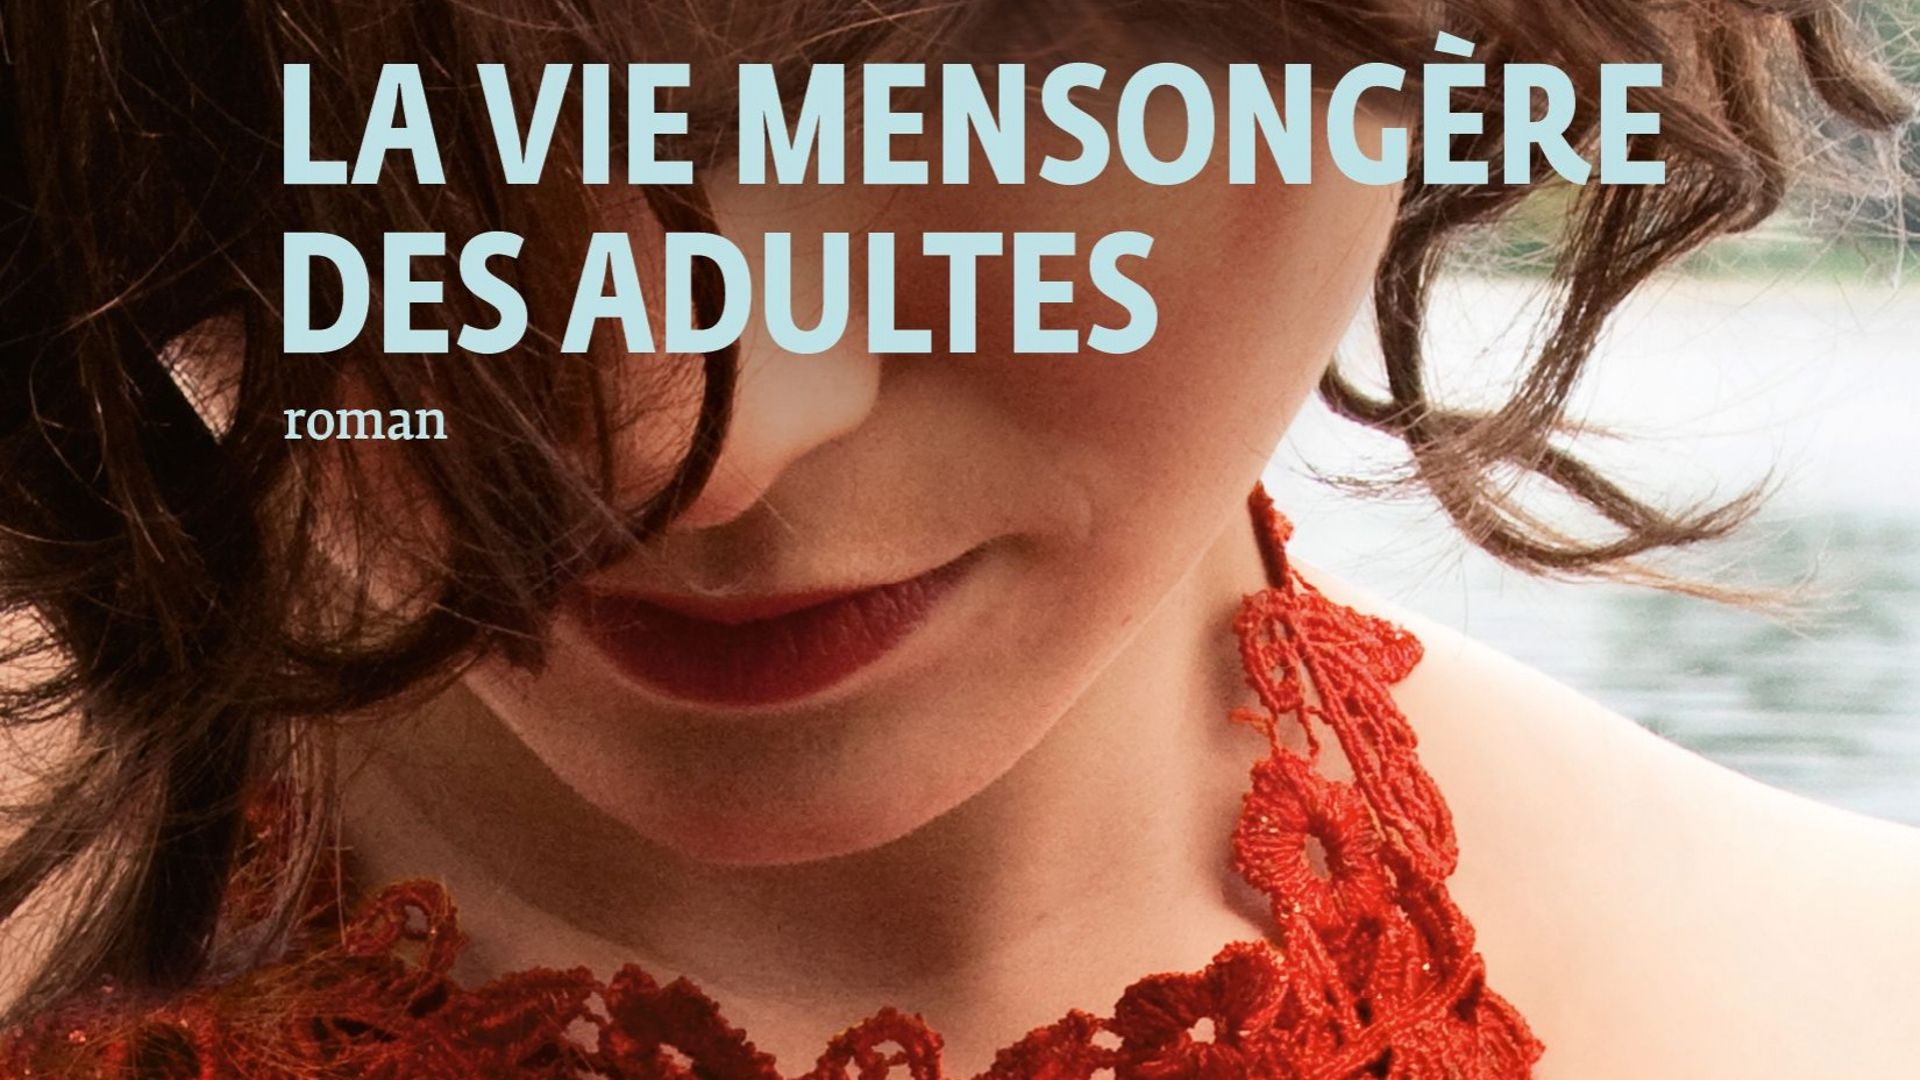 La vie mensongère des adultes, le nouveau roman d'Elena Ferrante est sorti dans la version française ce mardi 9 juin